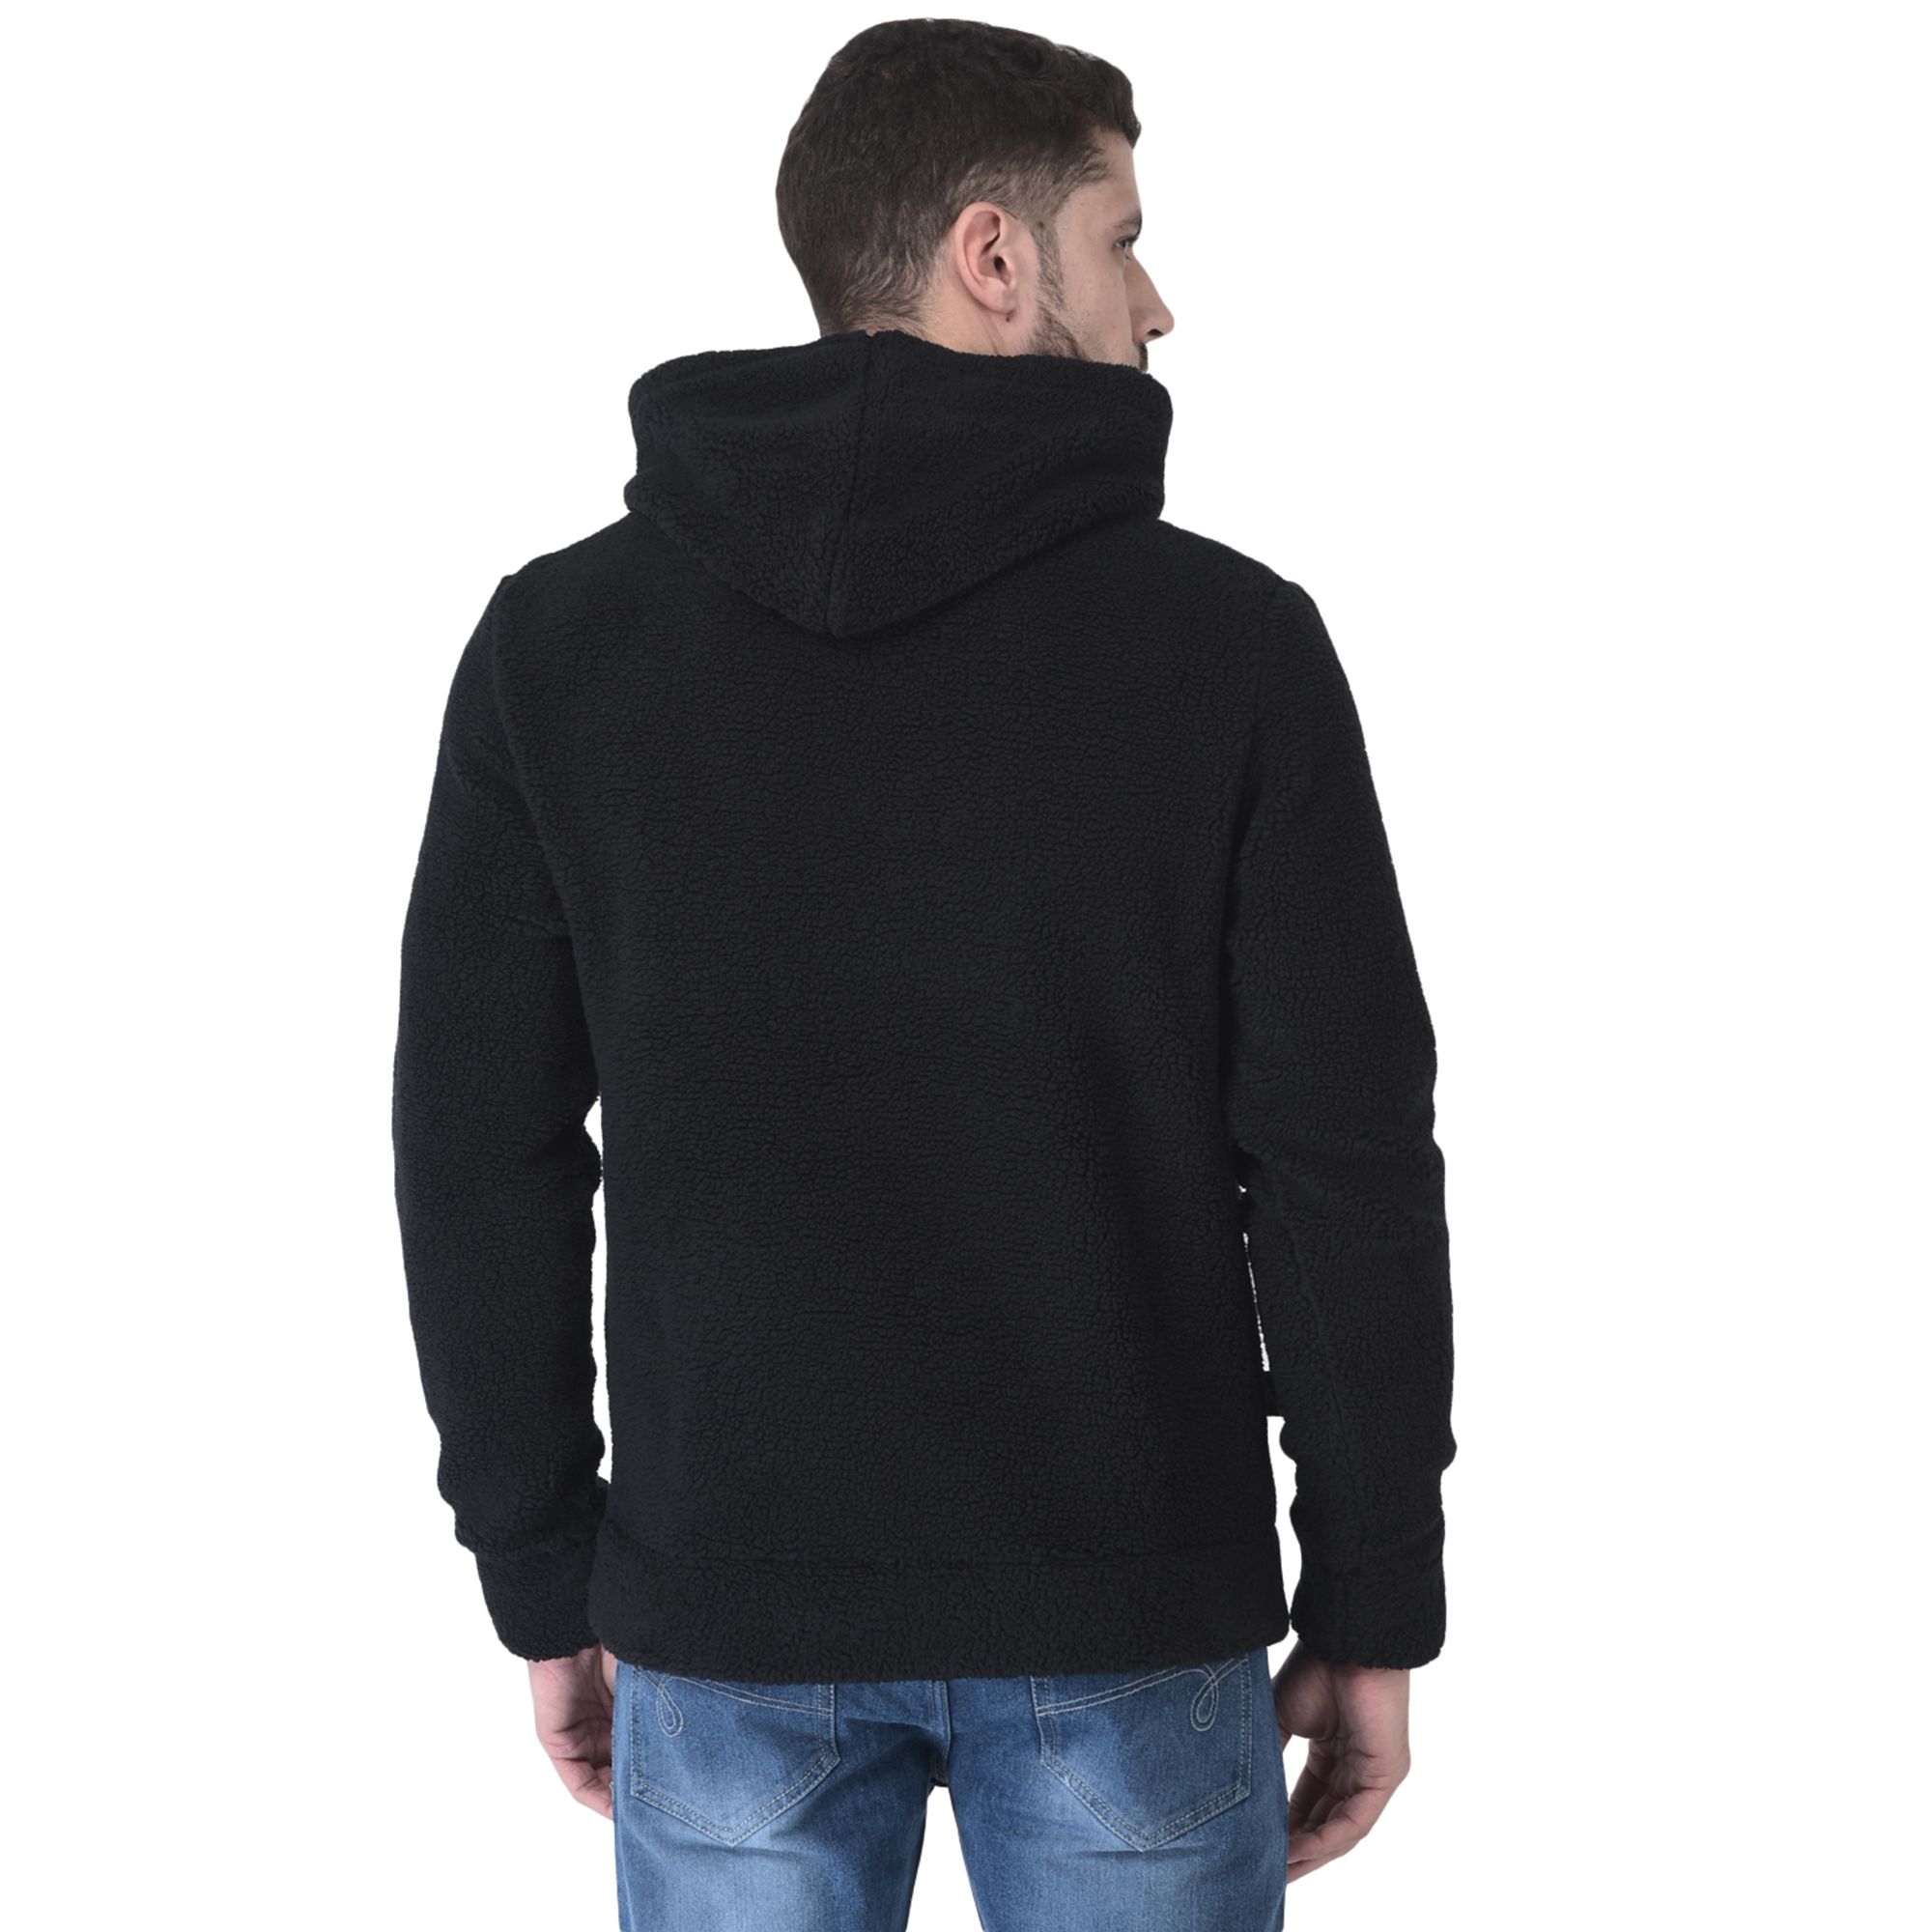 How to Instantly Elevate a Basic Sweatshirt | Blazer street style, Black  blazer outfit, Black blazer street style